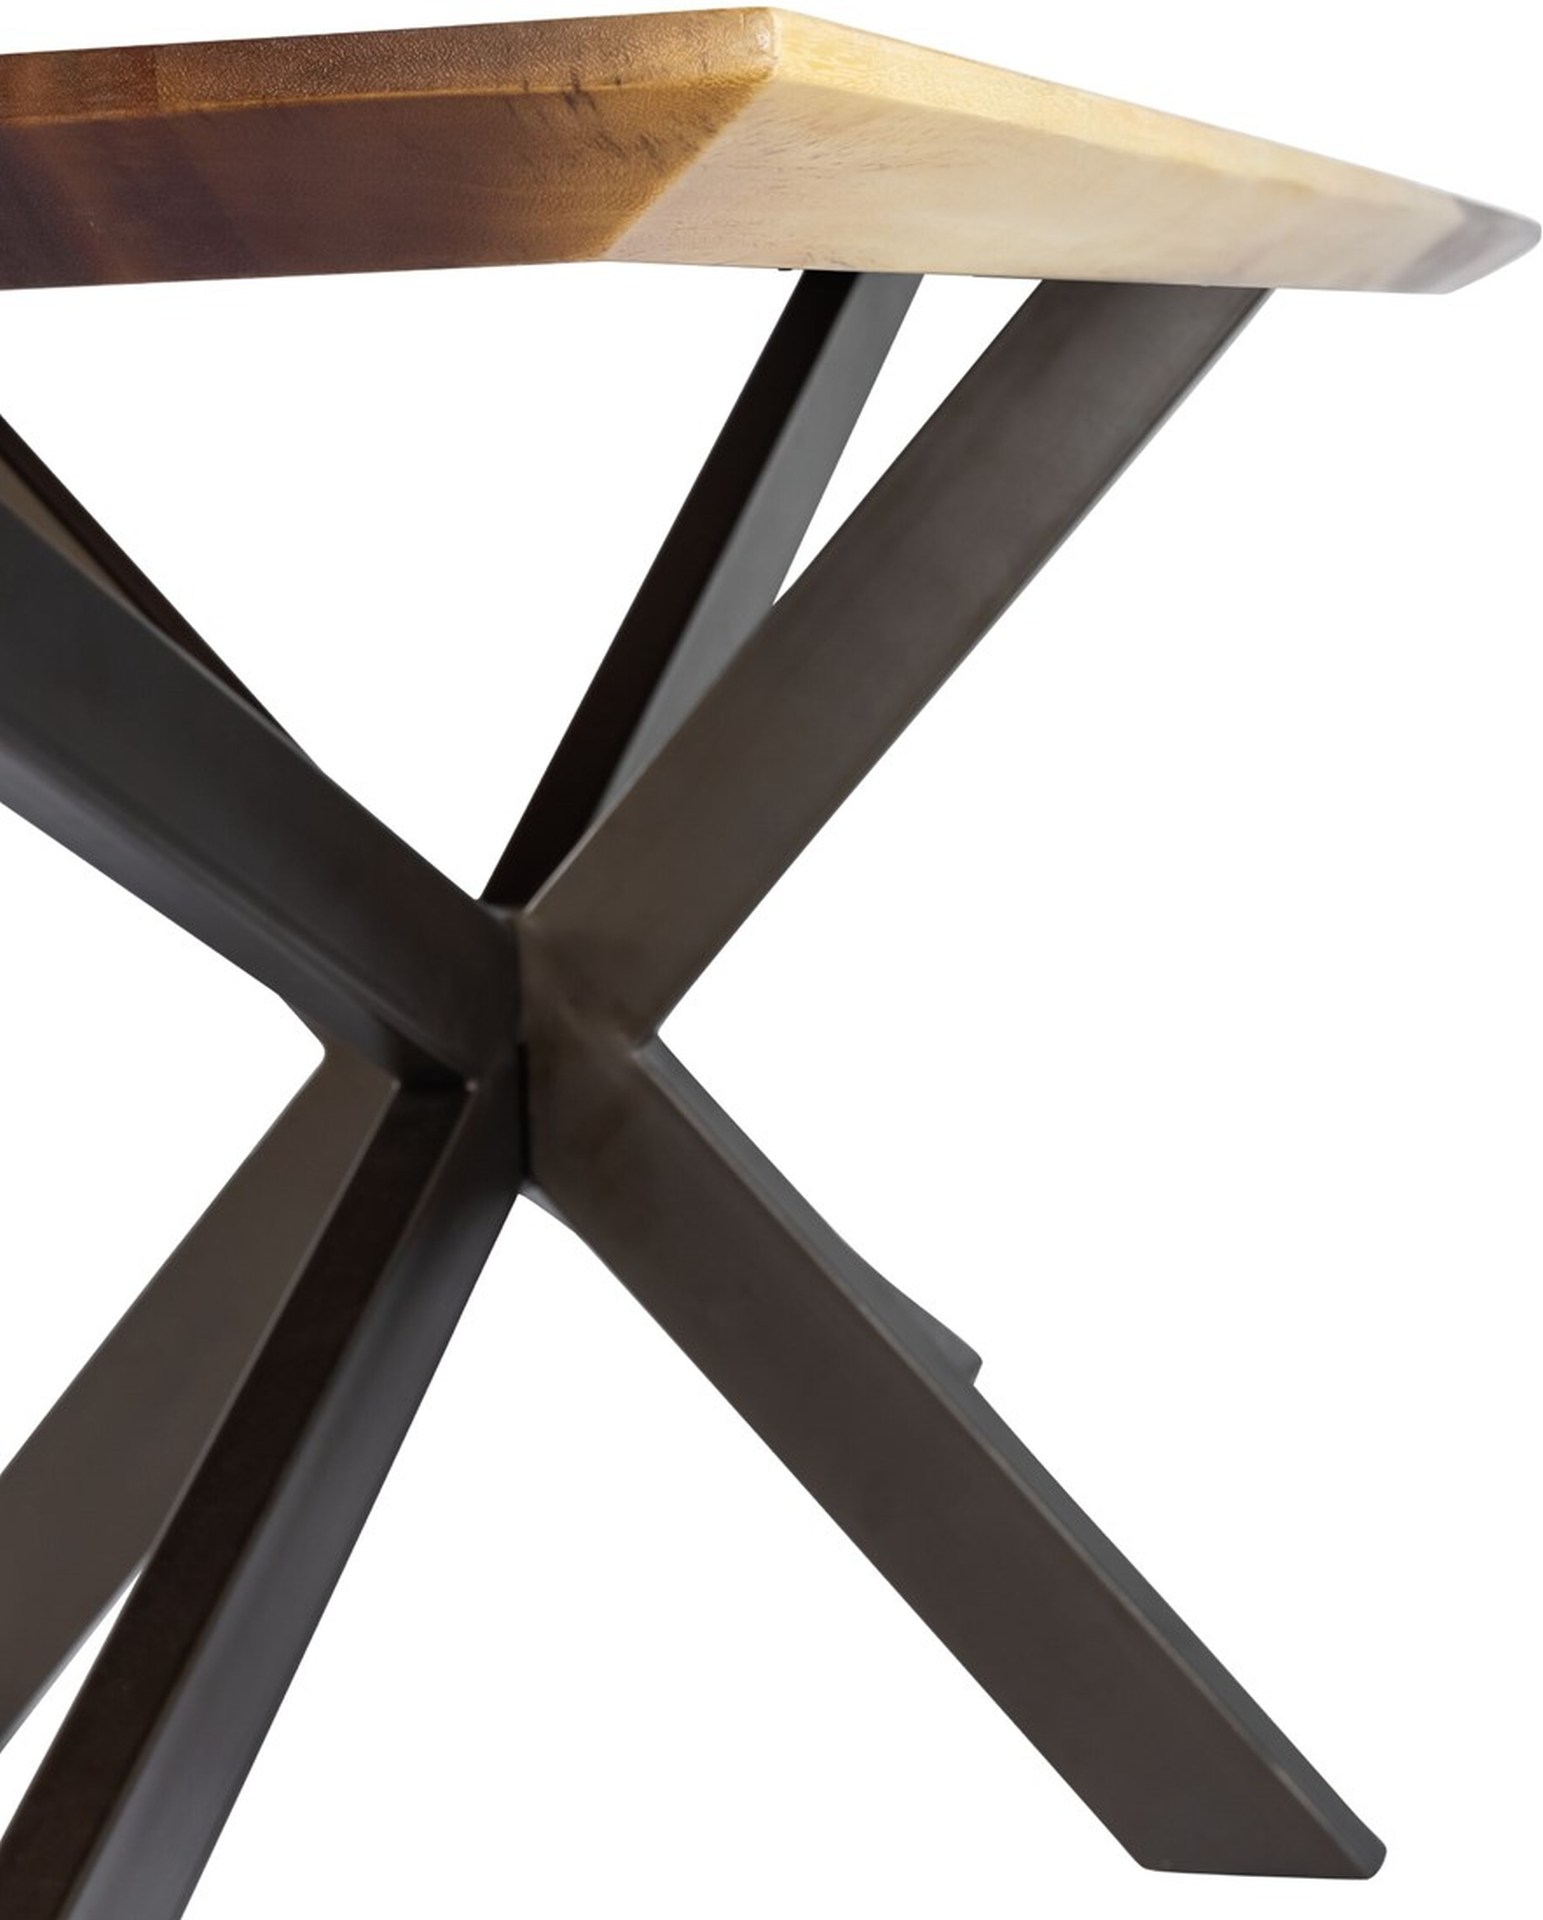 Der Esstisch Flare wurde aus massivem Suar Holz gefertigt, welches einen natürlichen Farbton besitzt. Das Gestell ist aus Metall und besitzt eine schwarze Farbe. Der Esstisch überzeugt mit seinem industriellem aber auch massivem Design. Der Tisch hat eine